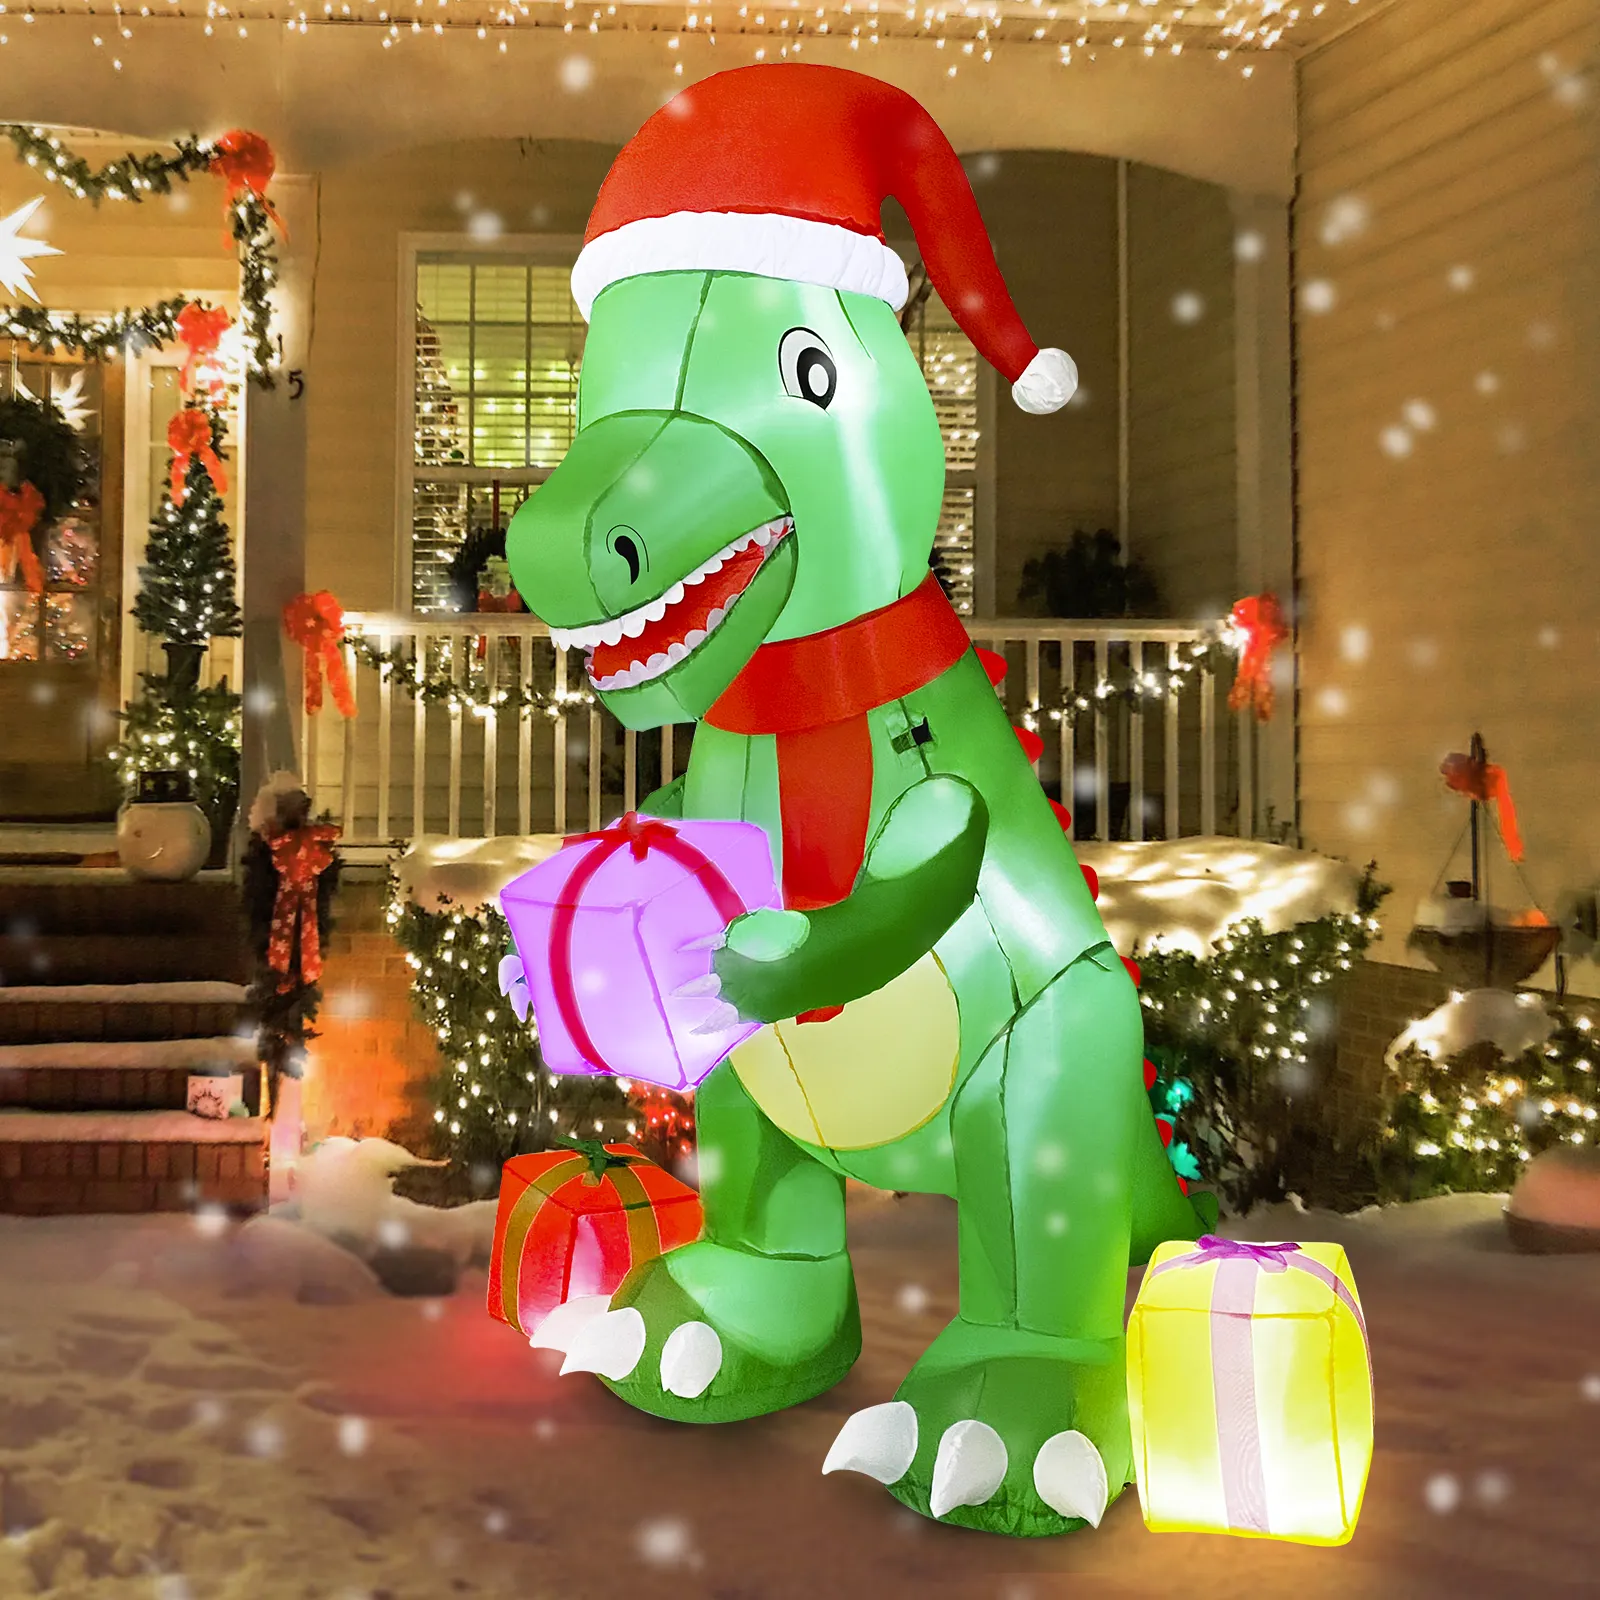 Nostro caldo giardino esterno decorazioni natalizie 6ft dinosauro gonfiabile con scatola regalo con luci a LED